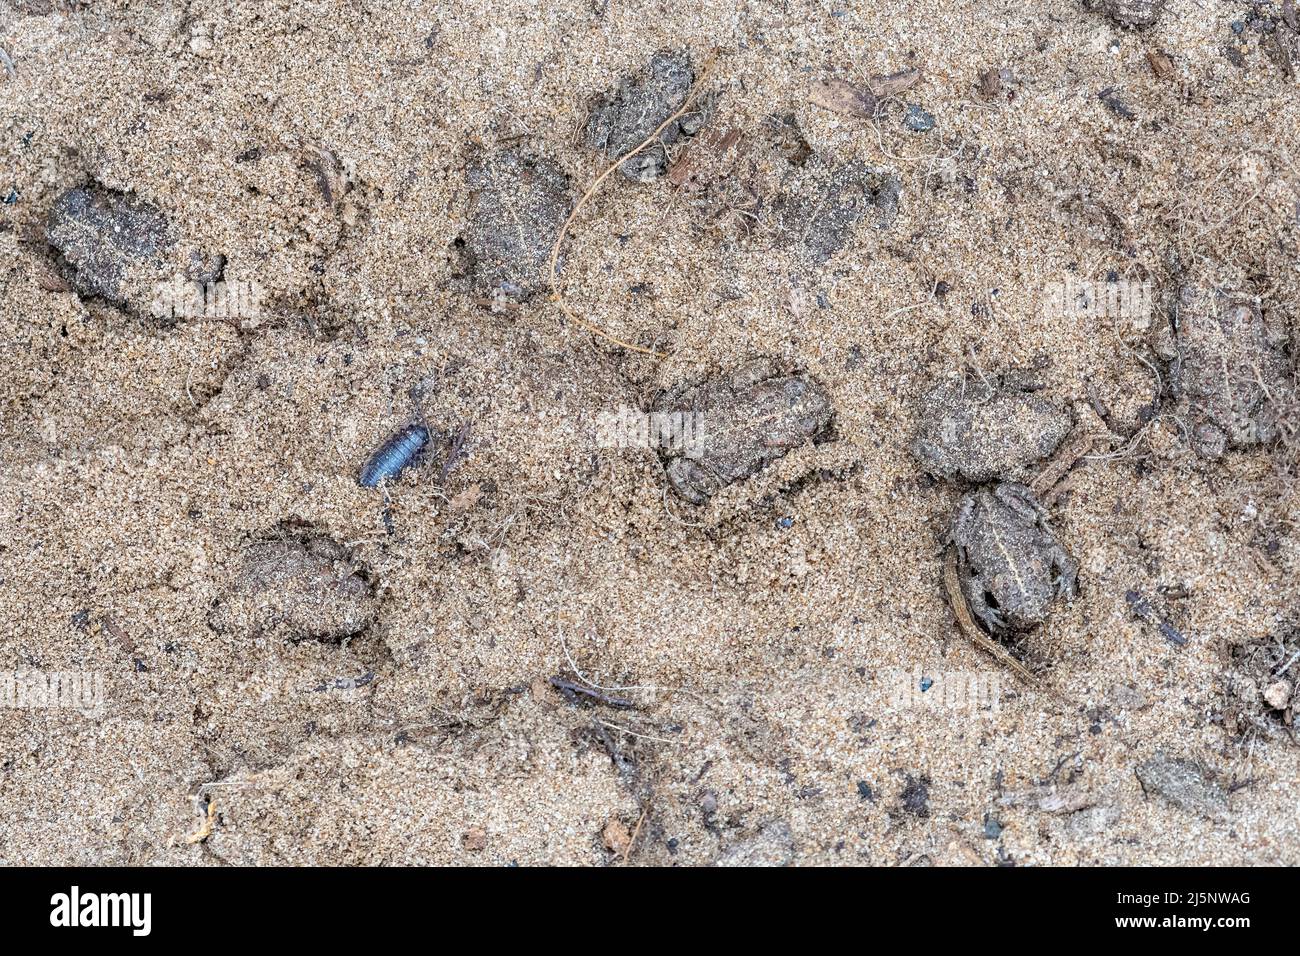 Natterjack toad (Epidalea calamita), diversi giovani natterjack toads nascondersi sotto un ceppo sepolto nella sabbia, Hampshire, Inghilterra, Regno Unito Foto Stock